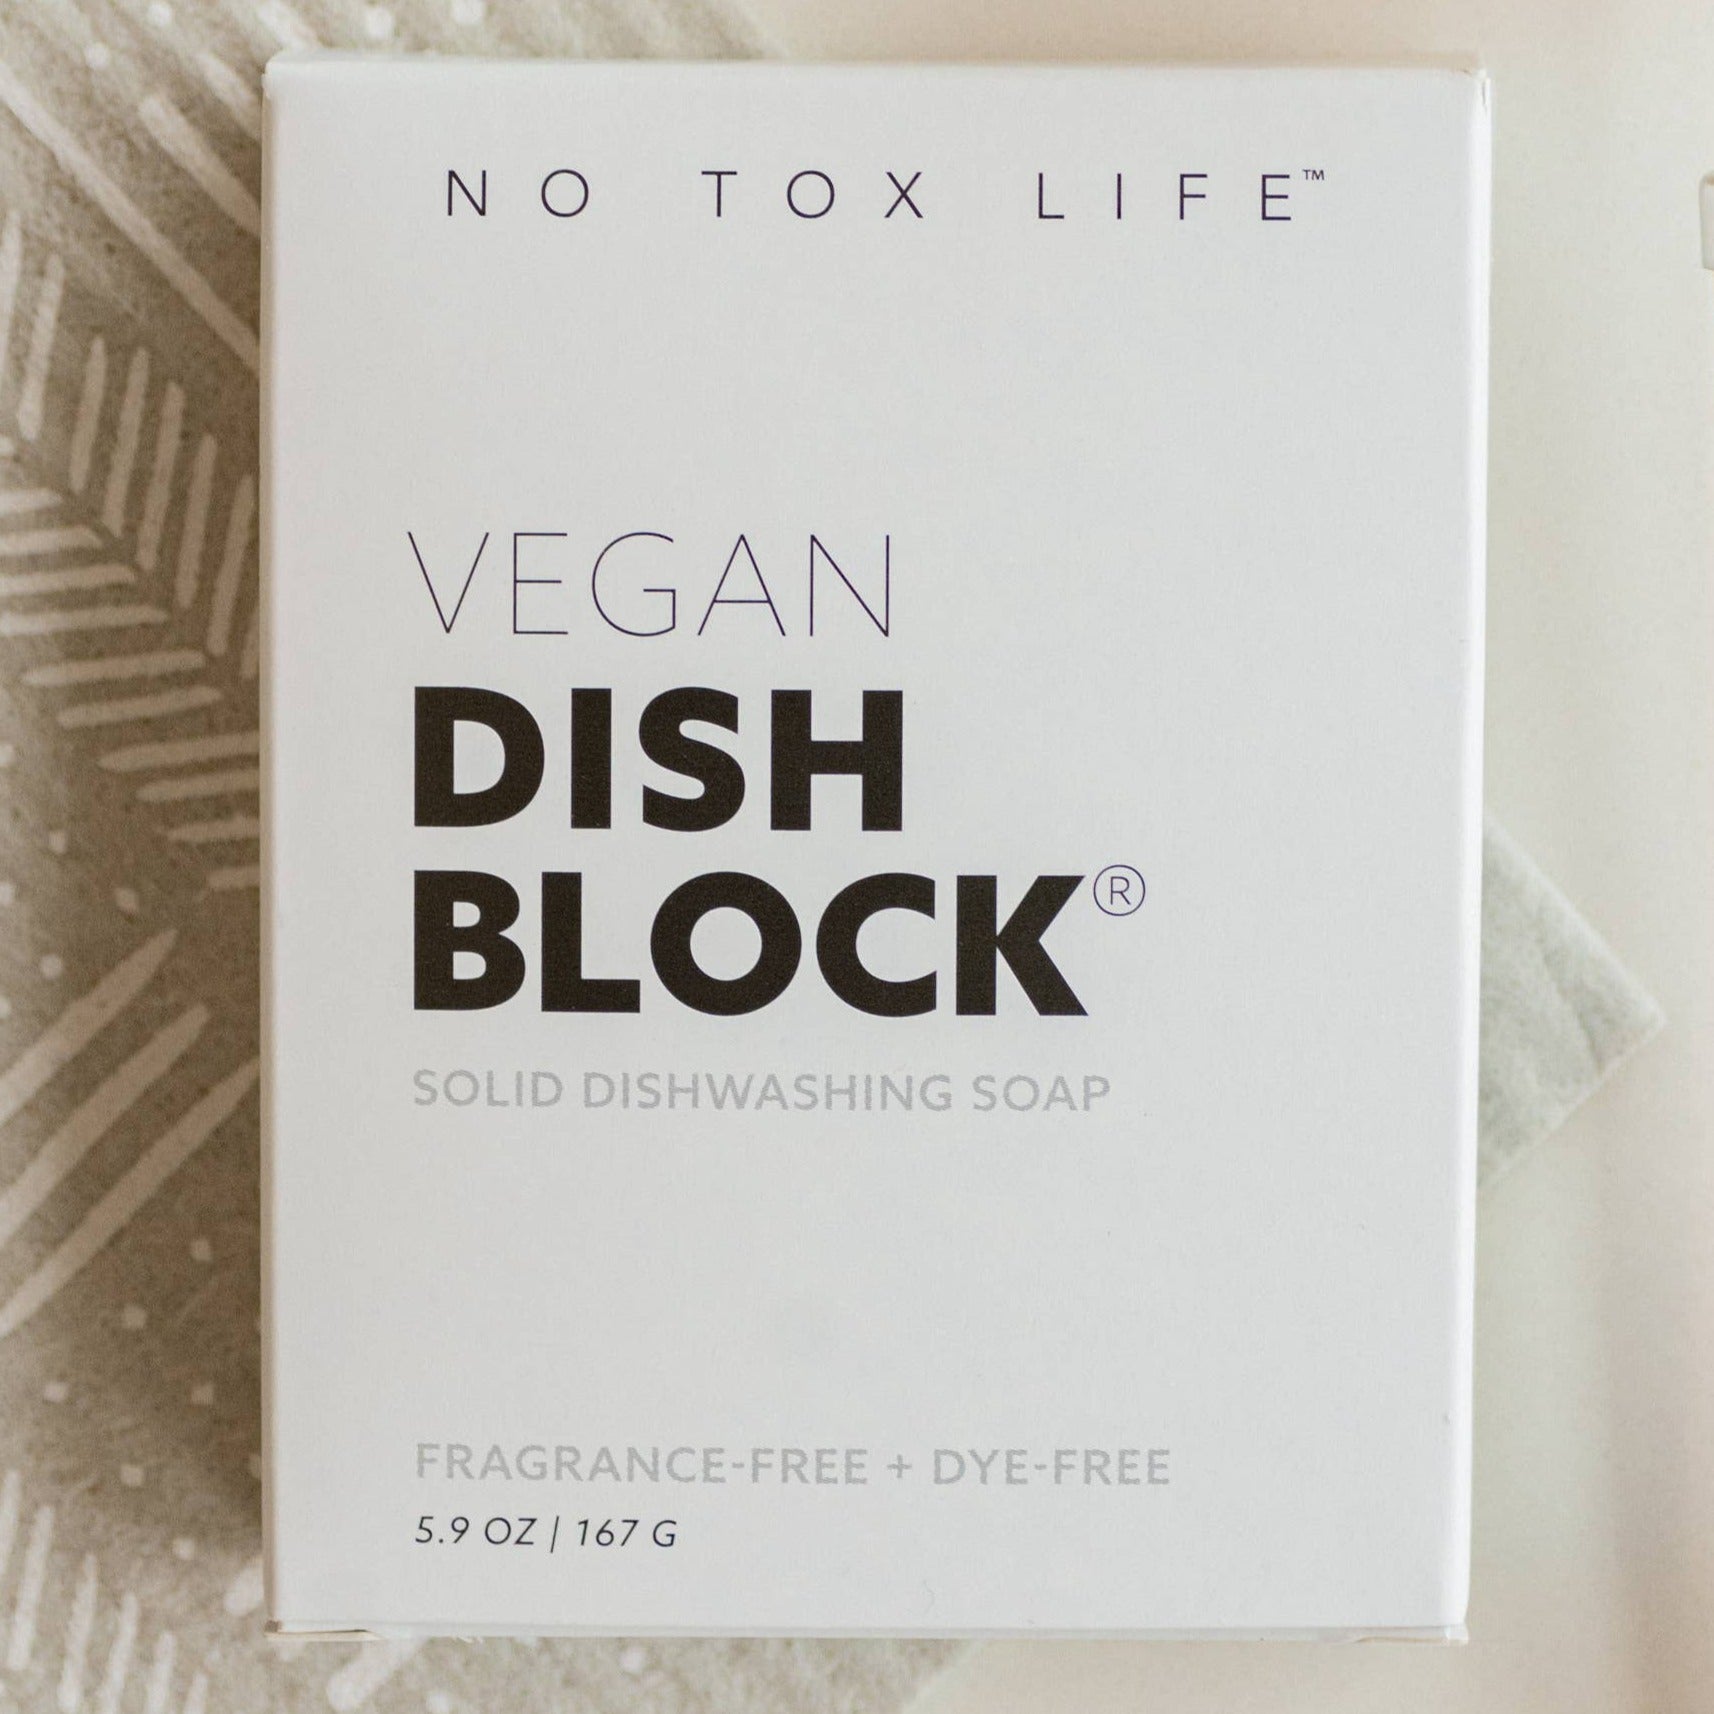 DISH BLOCK Solid Dishwashing Soap